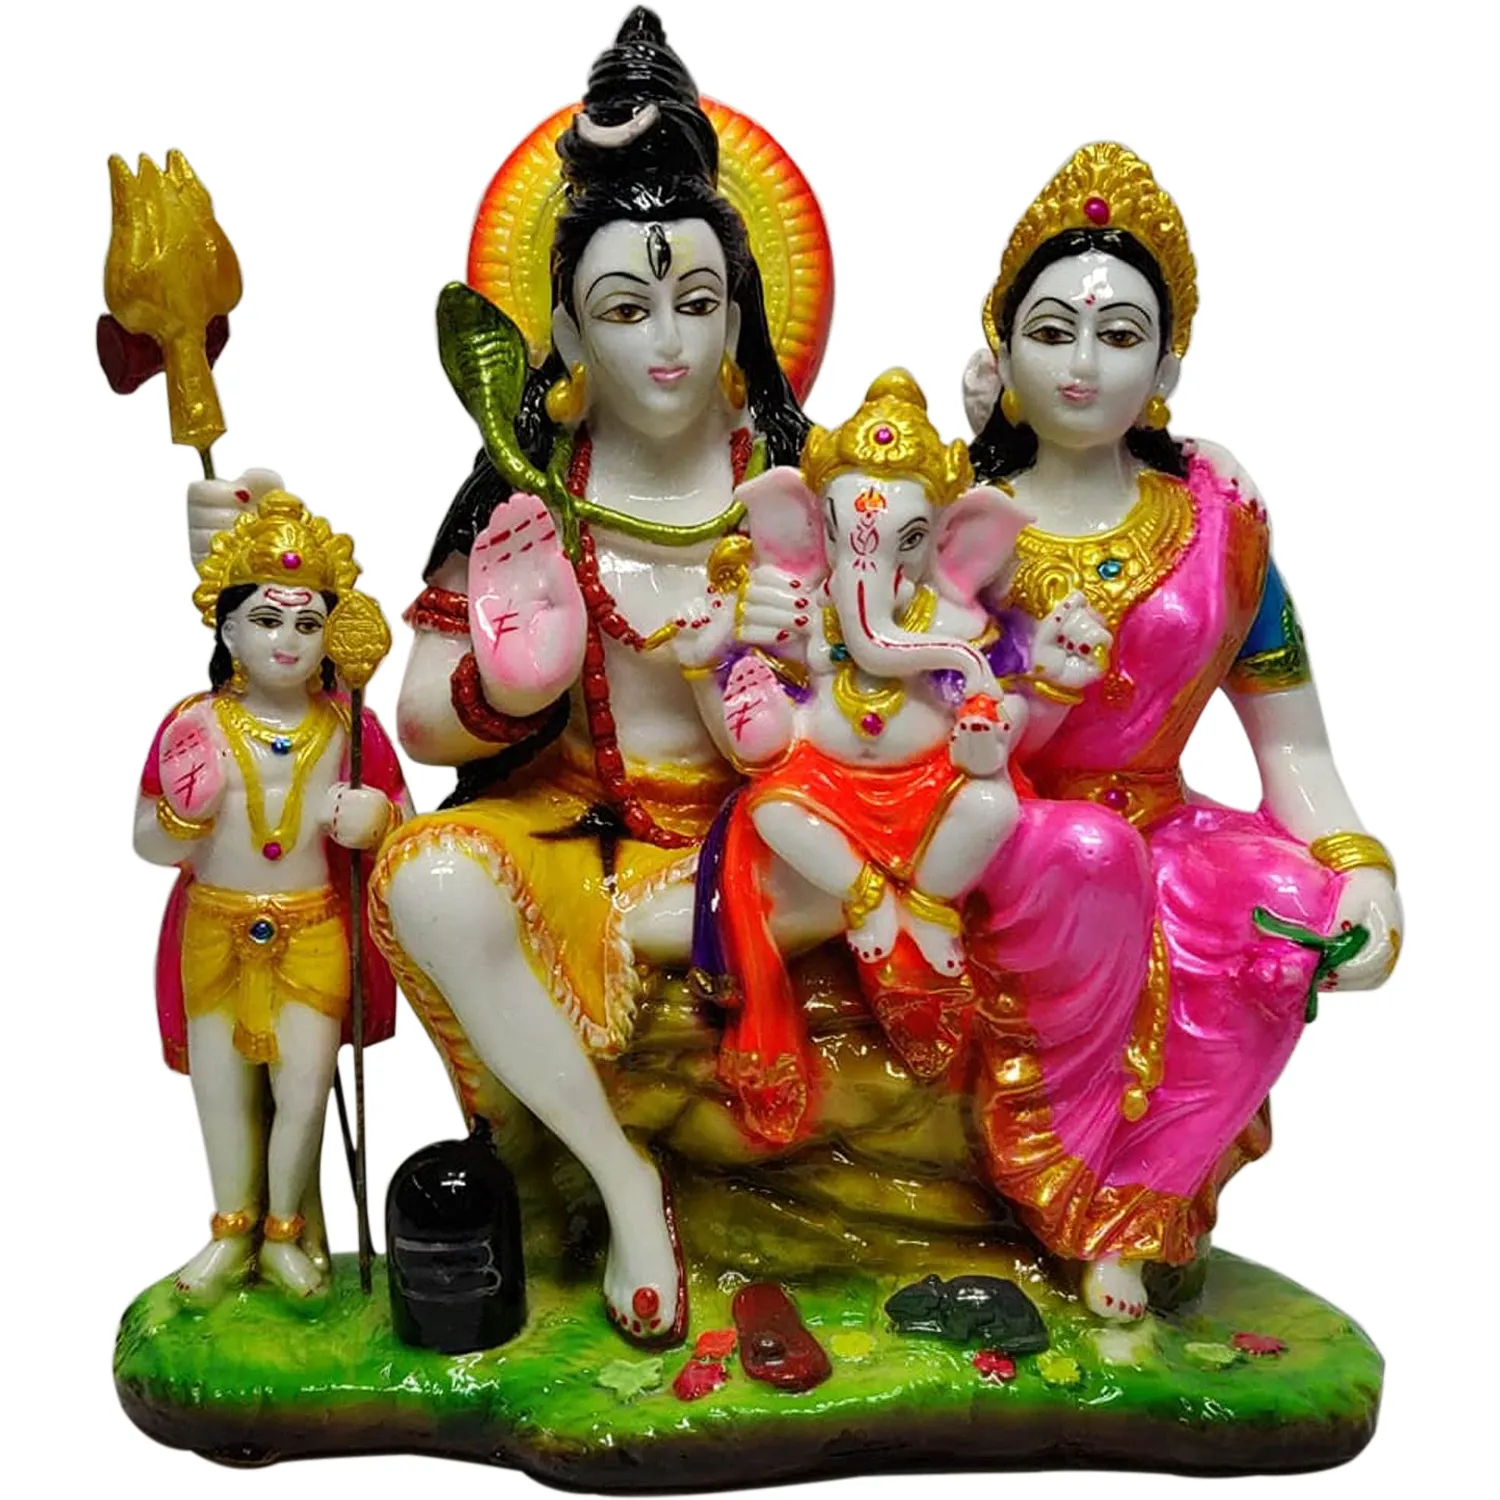 魅力的なシヴァ家族の像10 "シヴァパルバティガネーシュとカルティケヤアイドルヒンドゥー教の神の家族の彫刻